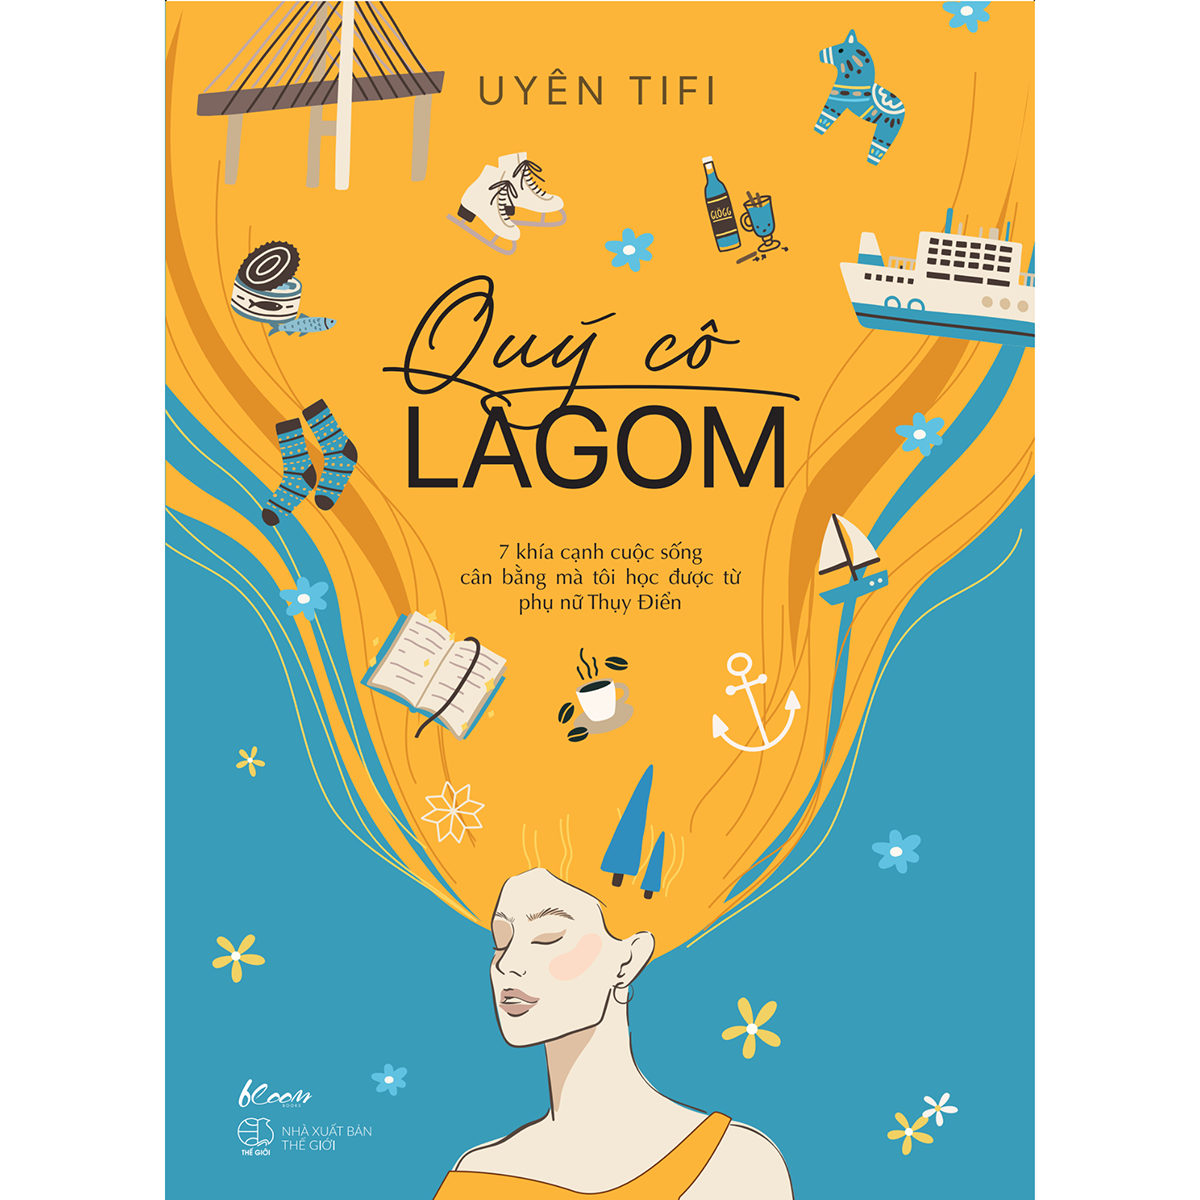 Quý Cô Lagom – 7 Khía Cạnh Cuộc Sống Mà Tôi Học Được Từ Phụ Nữ Thụy Điển